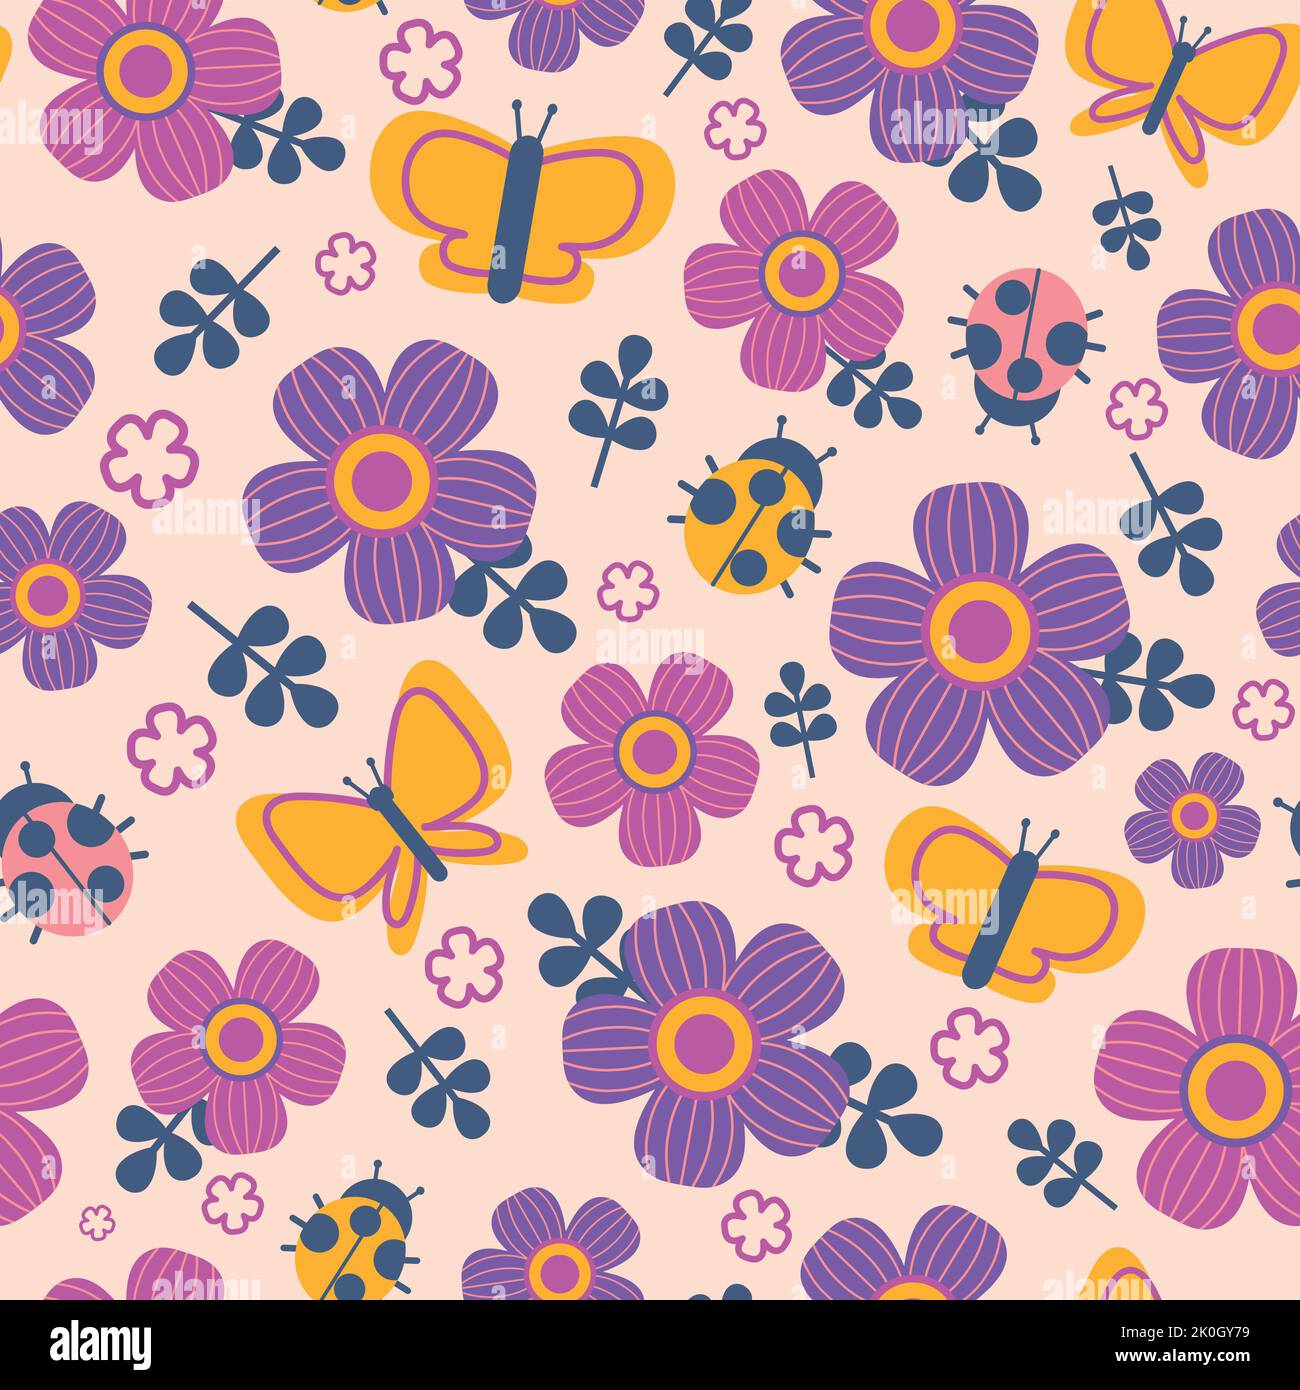 Blumen und Schmetterlinge Muster. Nahtloser Druck von niedlichen Cartoon bunte einfache Elemente, Sommergarten Blumen, Käfer und Schmetterlinge Kinder Stock Vektor